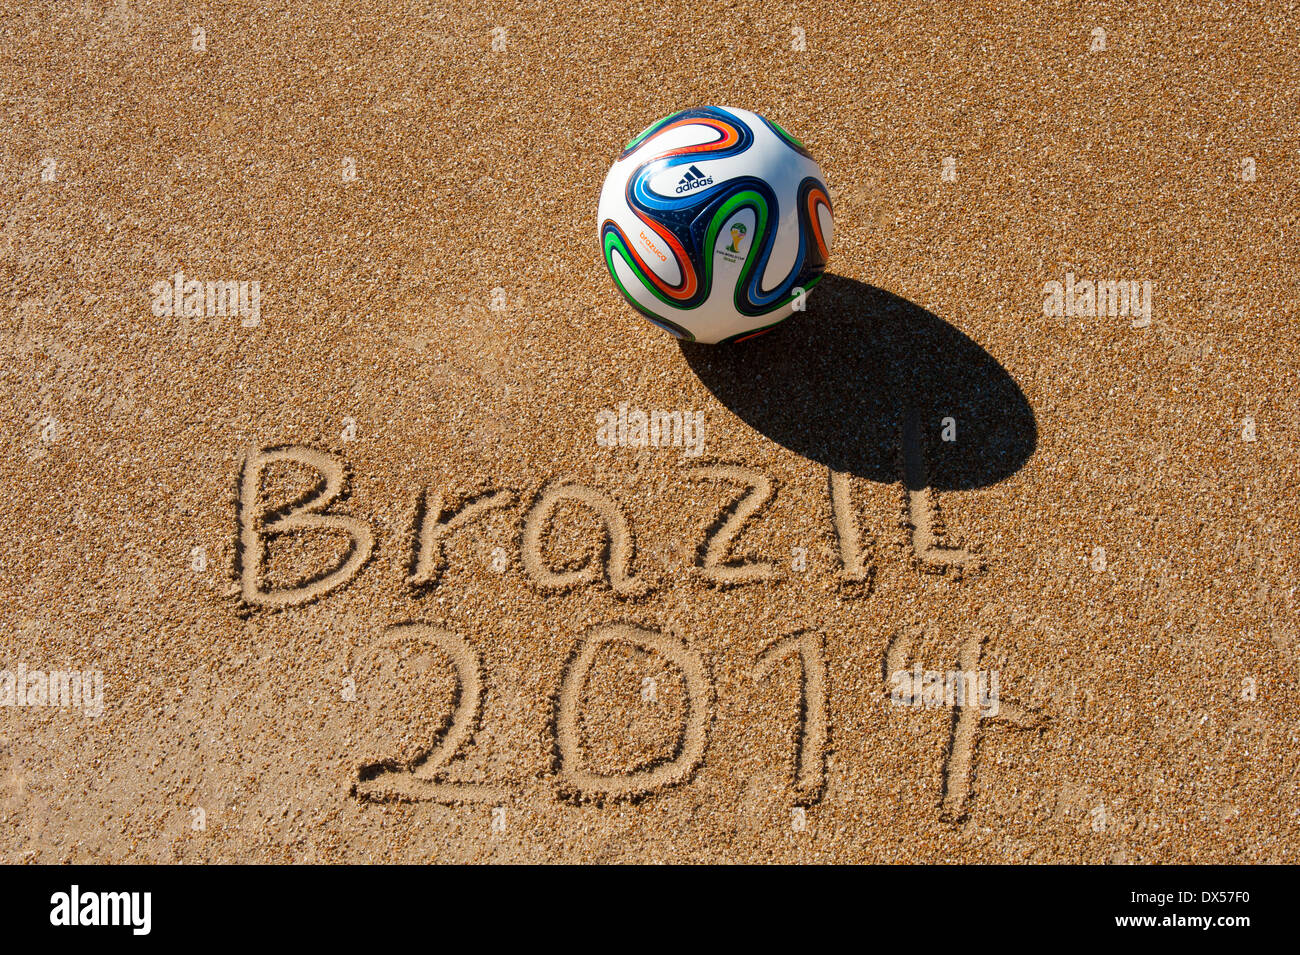 Brazuca", Spielball der FIFA-Weltmeisterschaft Brasilien 2014 an einem  Sandstrand (offizielle Replica Ball Stockfotografie - Alamy